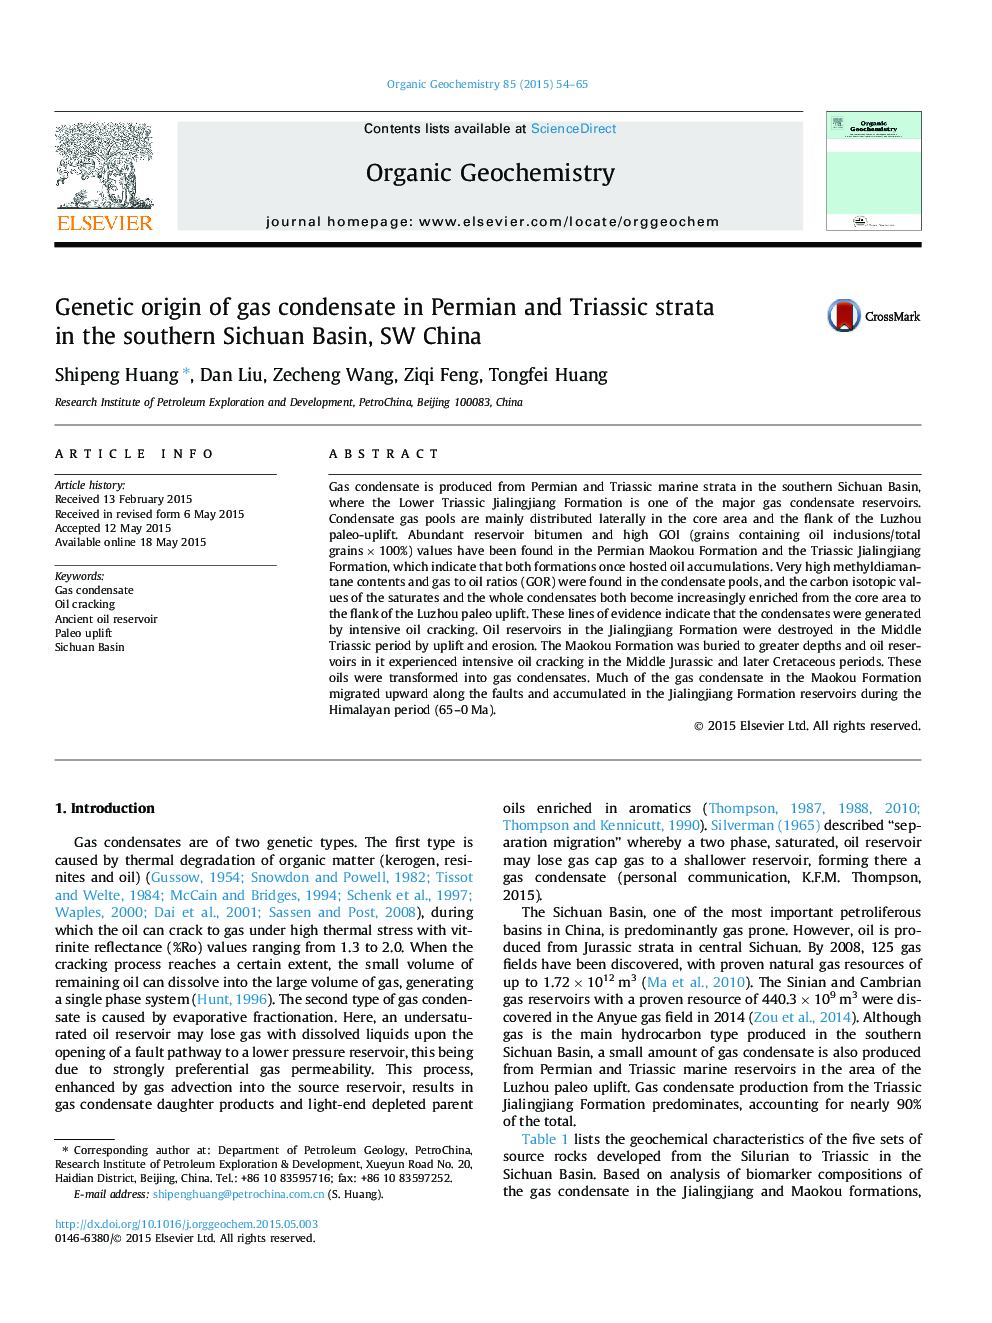 منشاء ژنتیکی میعانات گازی در پرمین و تریاس در جنوب حوضه سیچوان، جنوب غربی چین 